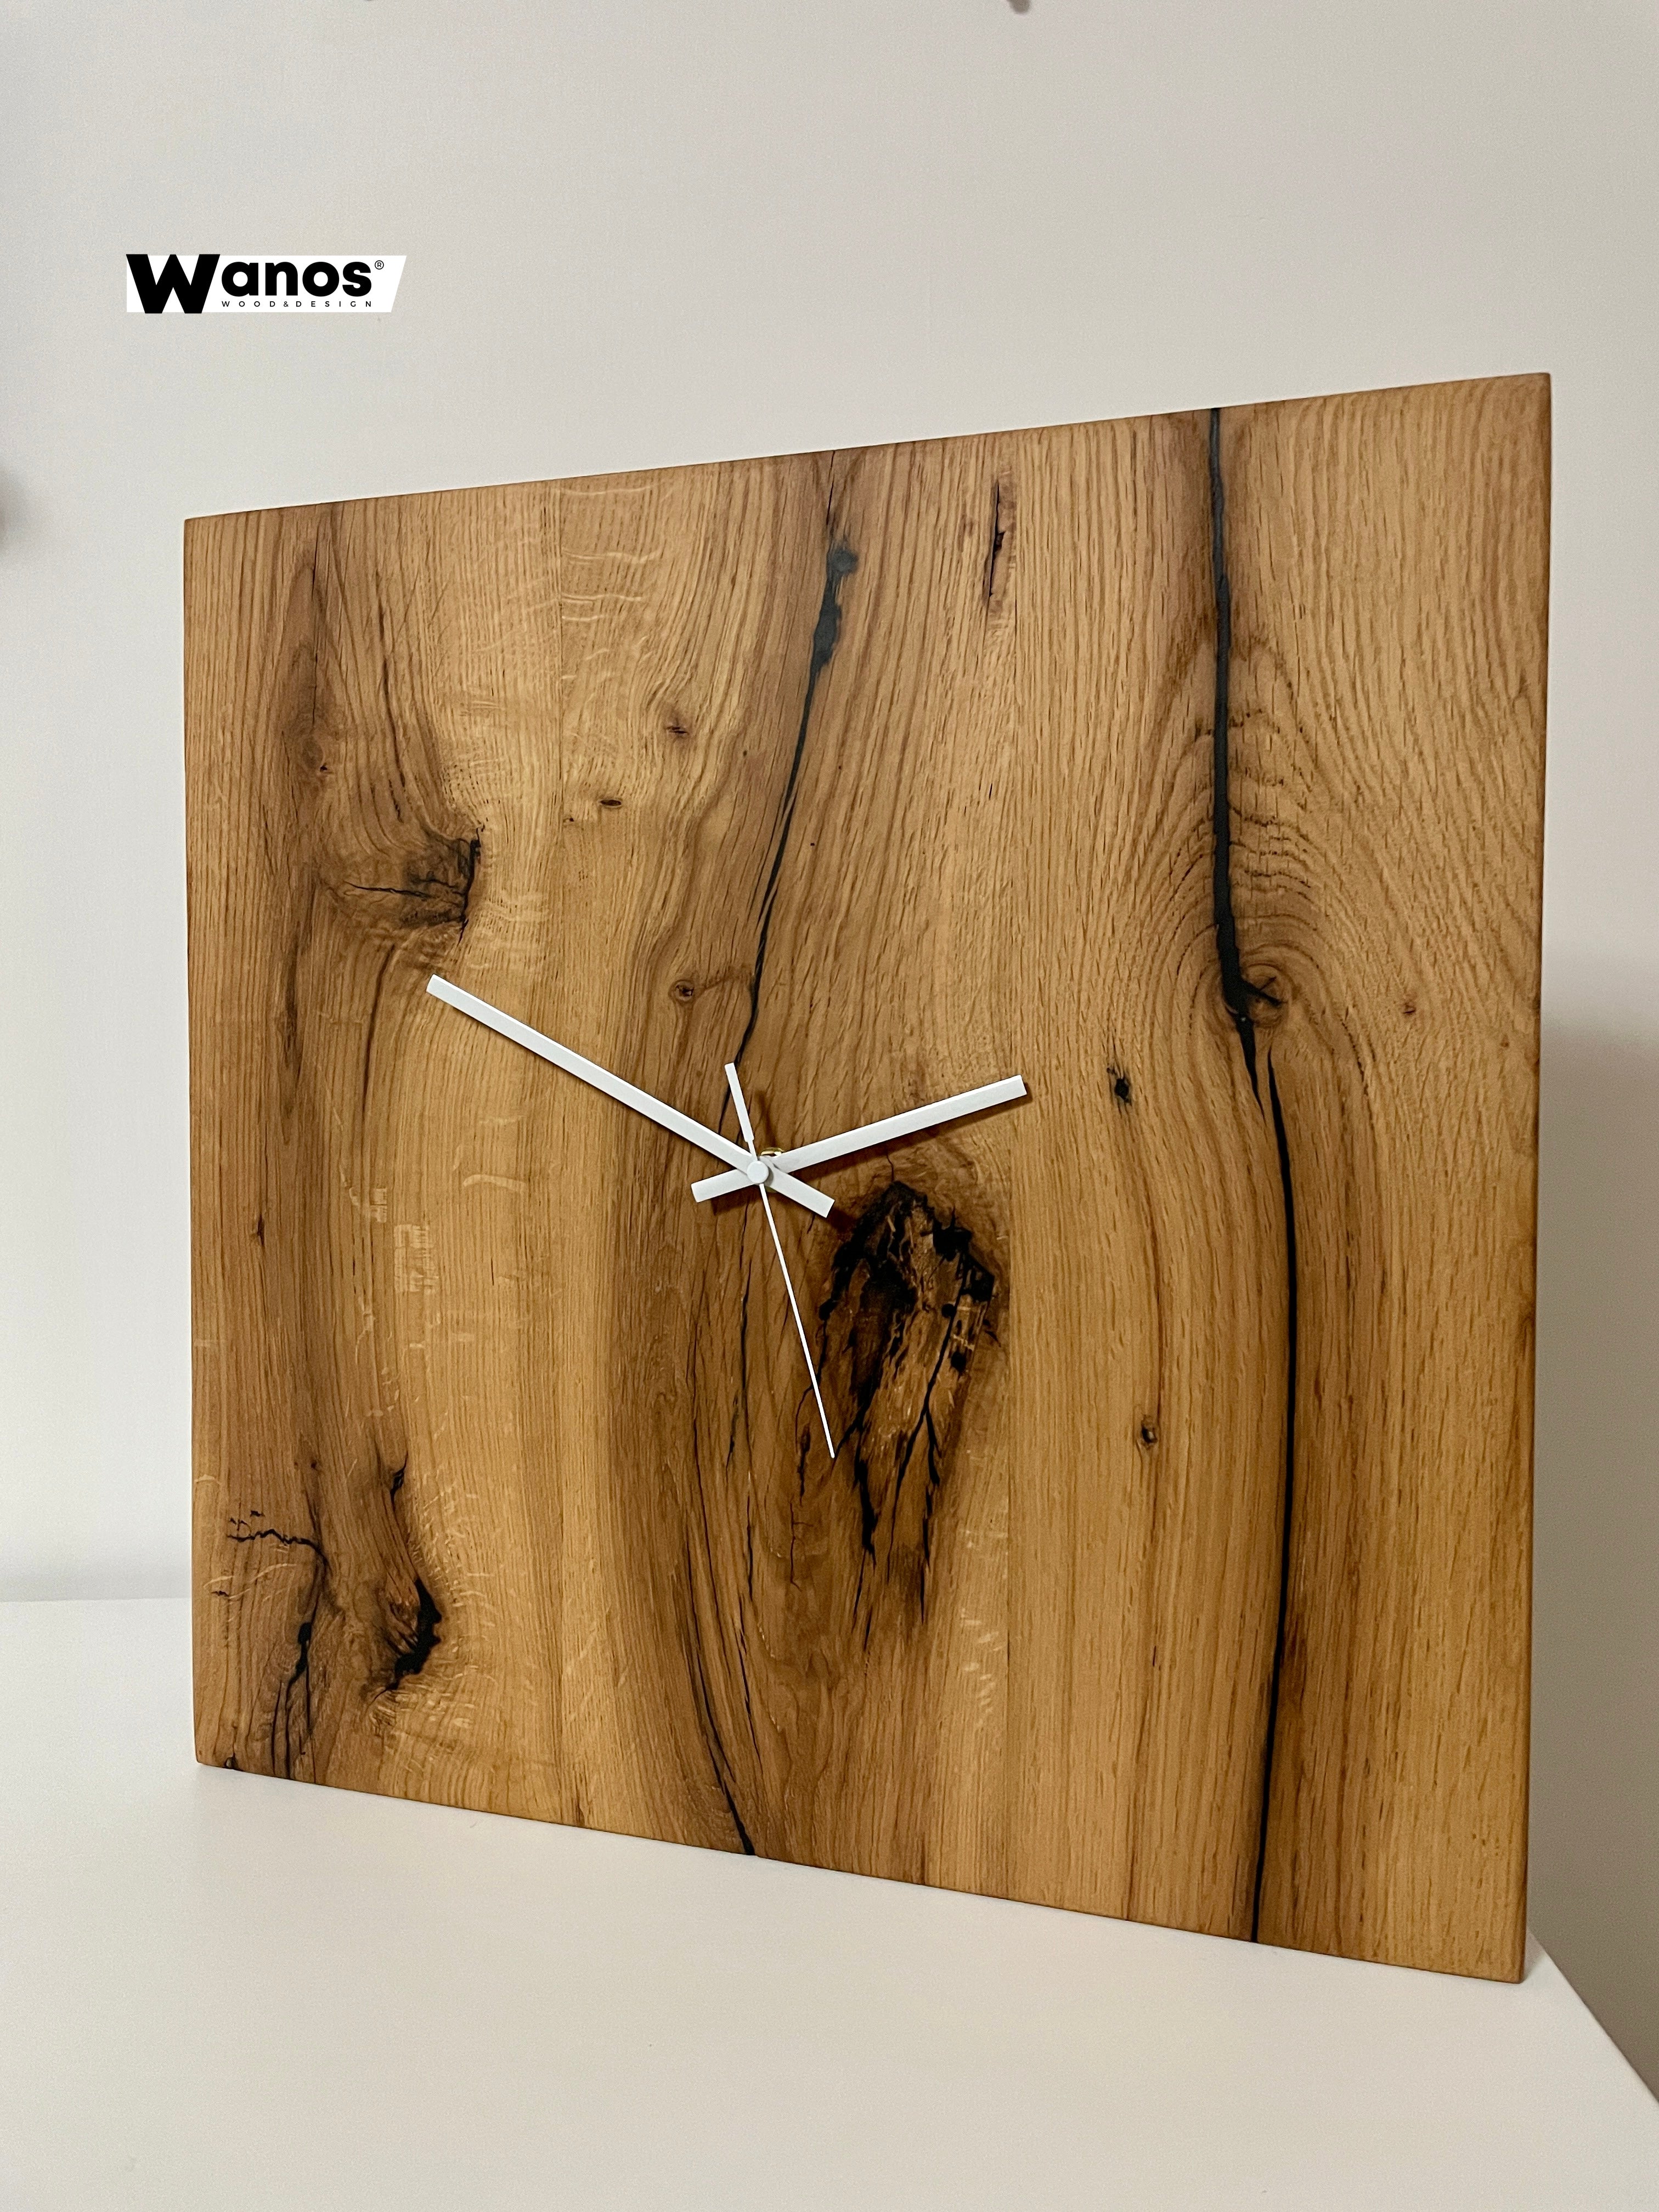 Orologio da parete realizzato in legno massello di rovere invecchiato –  Wanos Wood & Design